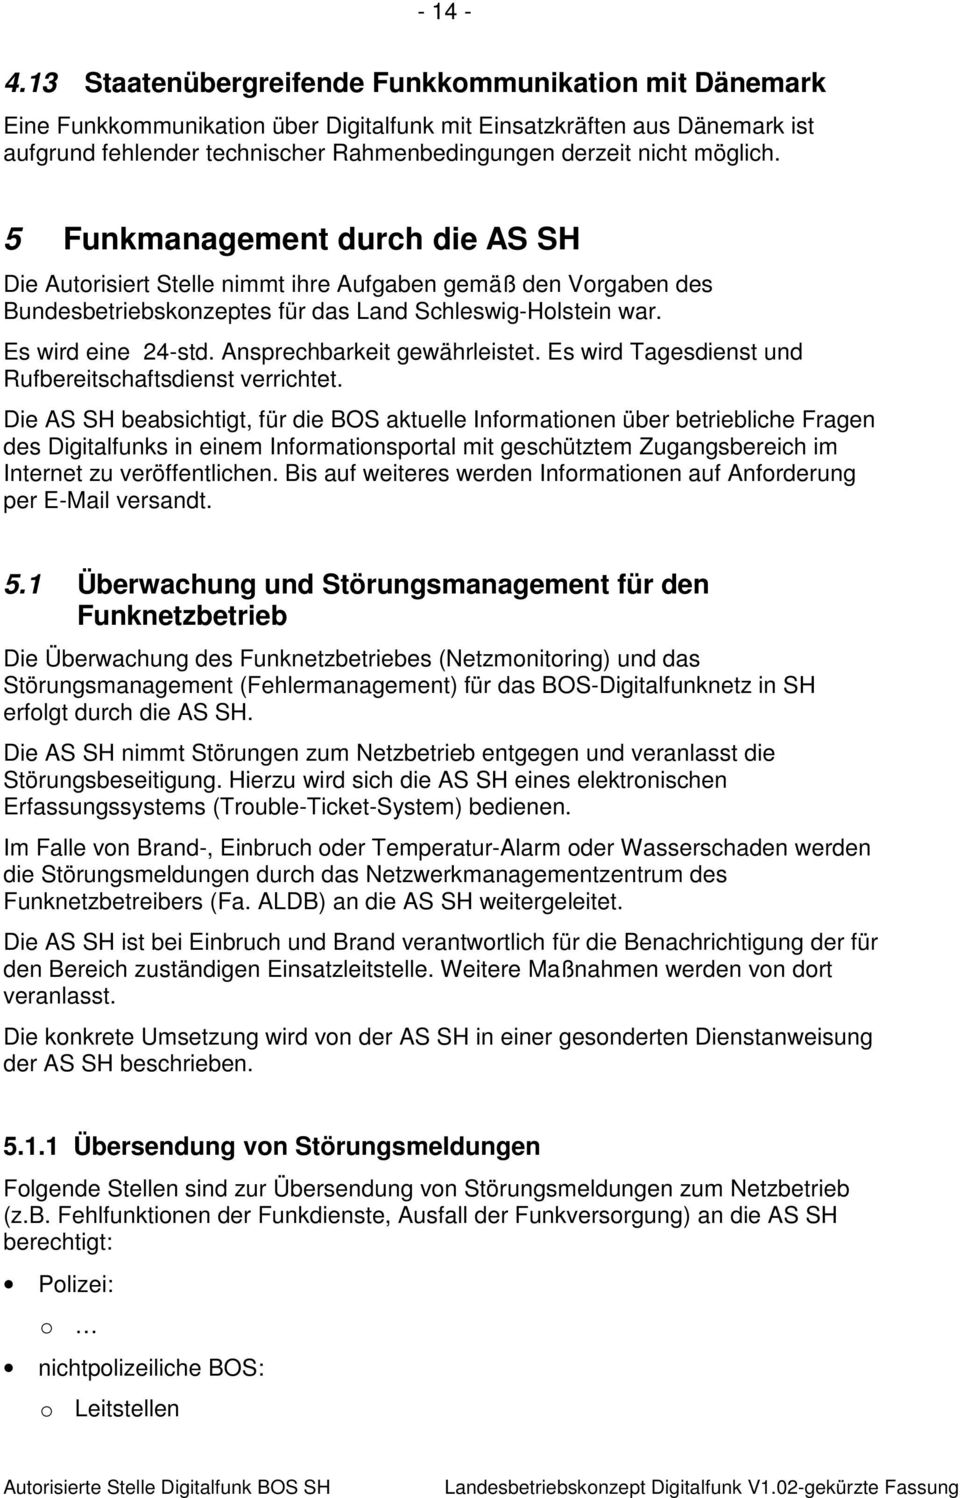 möglich. 5 Funkmanagement durch die AS SH Die Autorisiert Stelle nimmt ihre Aufgaben gemäß den Vorgaben des Bundesbetriebskonzeptes für das Land Schleswig-Holstein war. Es wird eine 24-std.